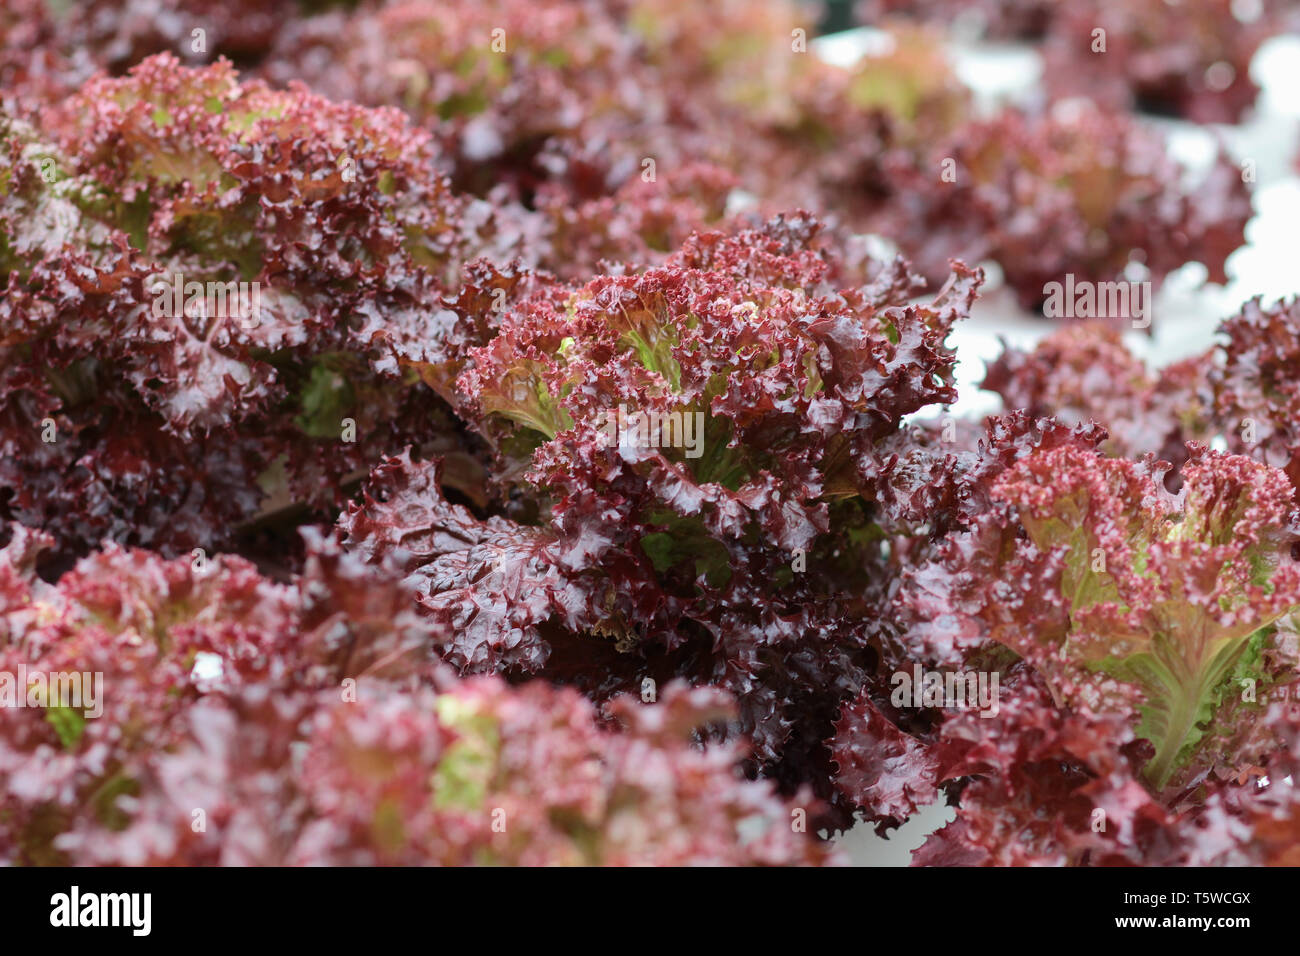 Fresche verdure biologiche coltivate utilizzando aquaponic o coltivazione idroponica Foto Stock